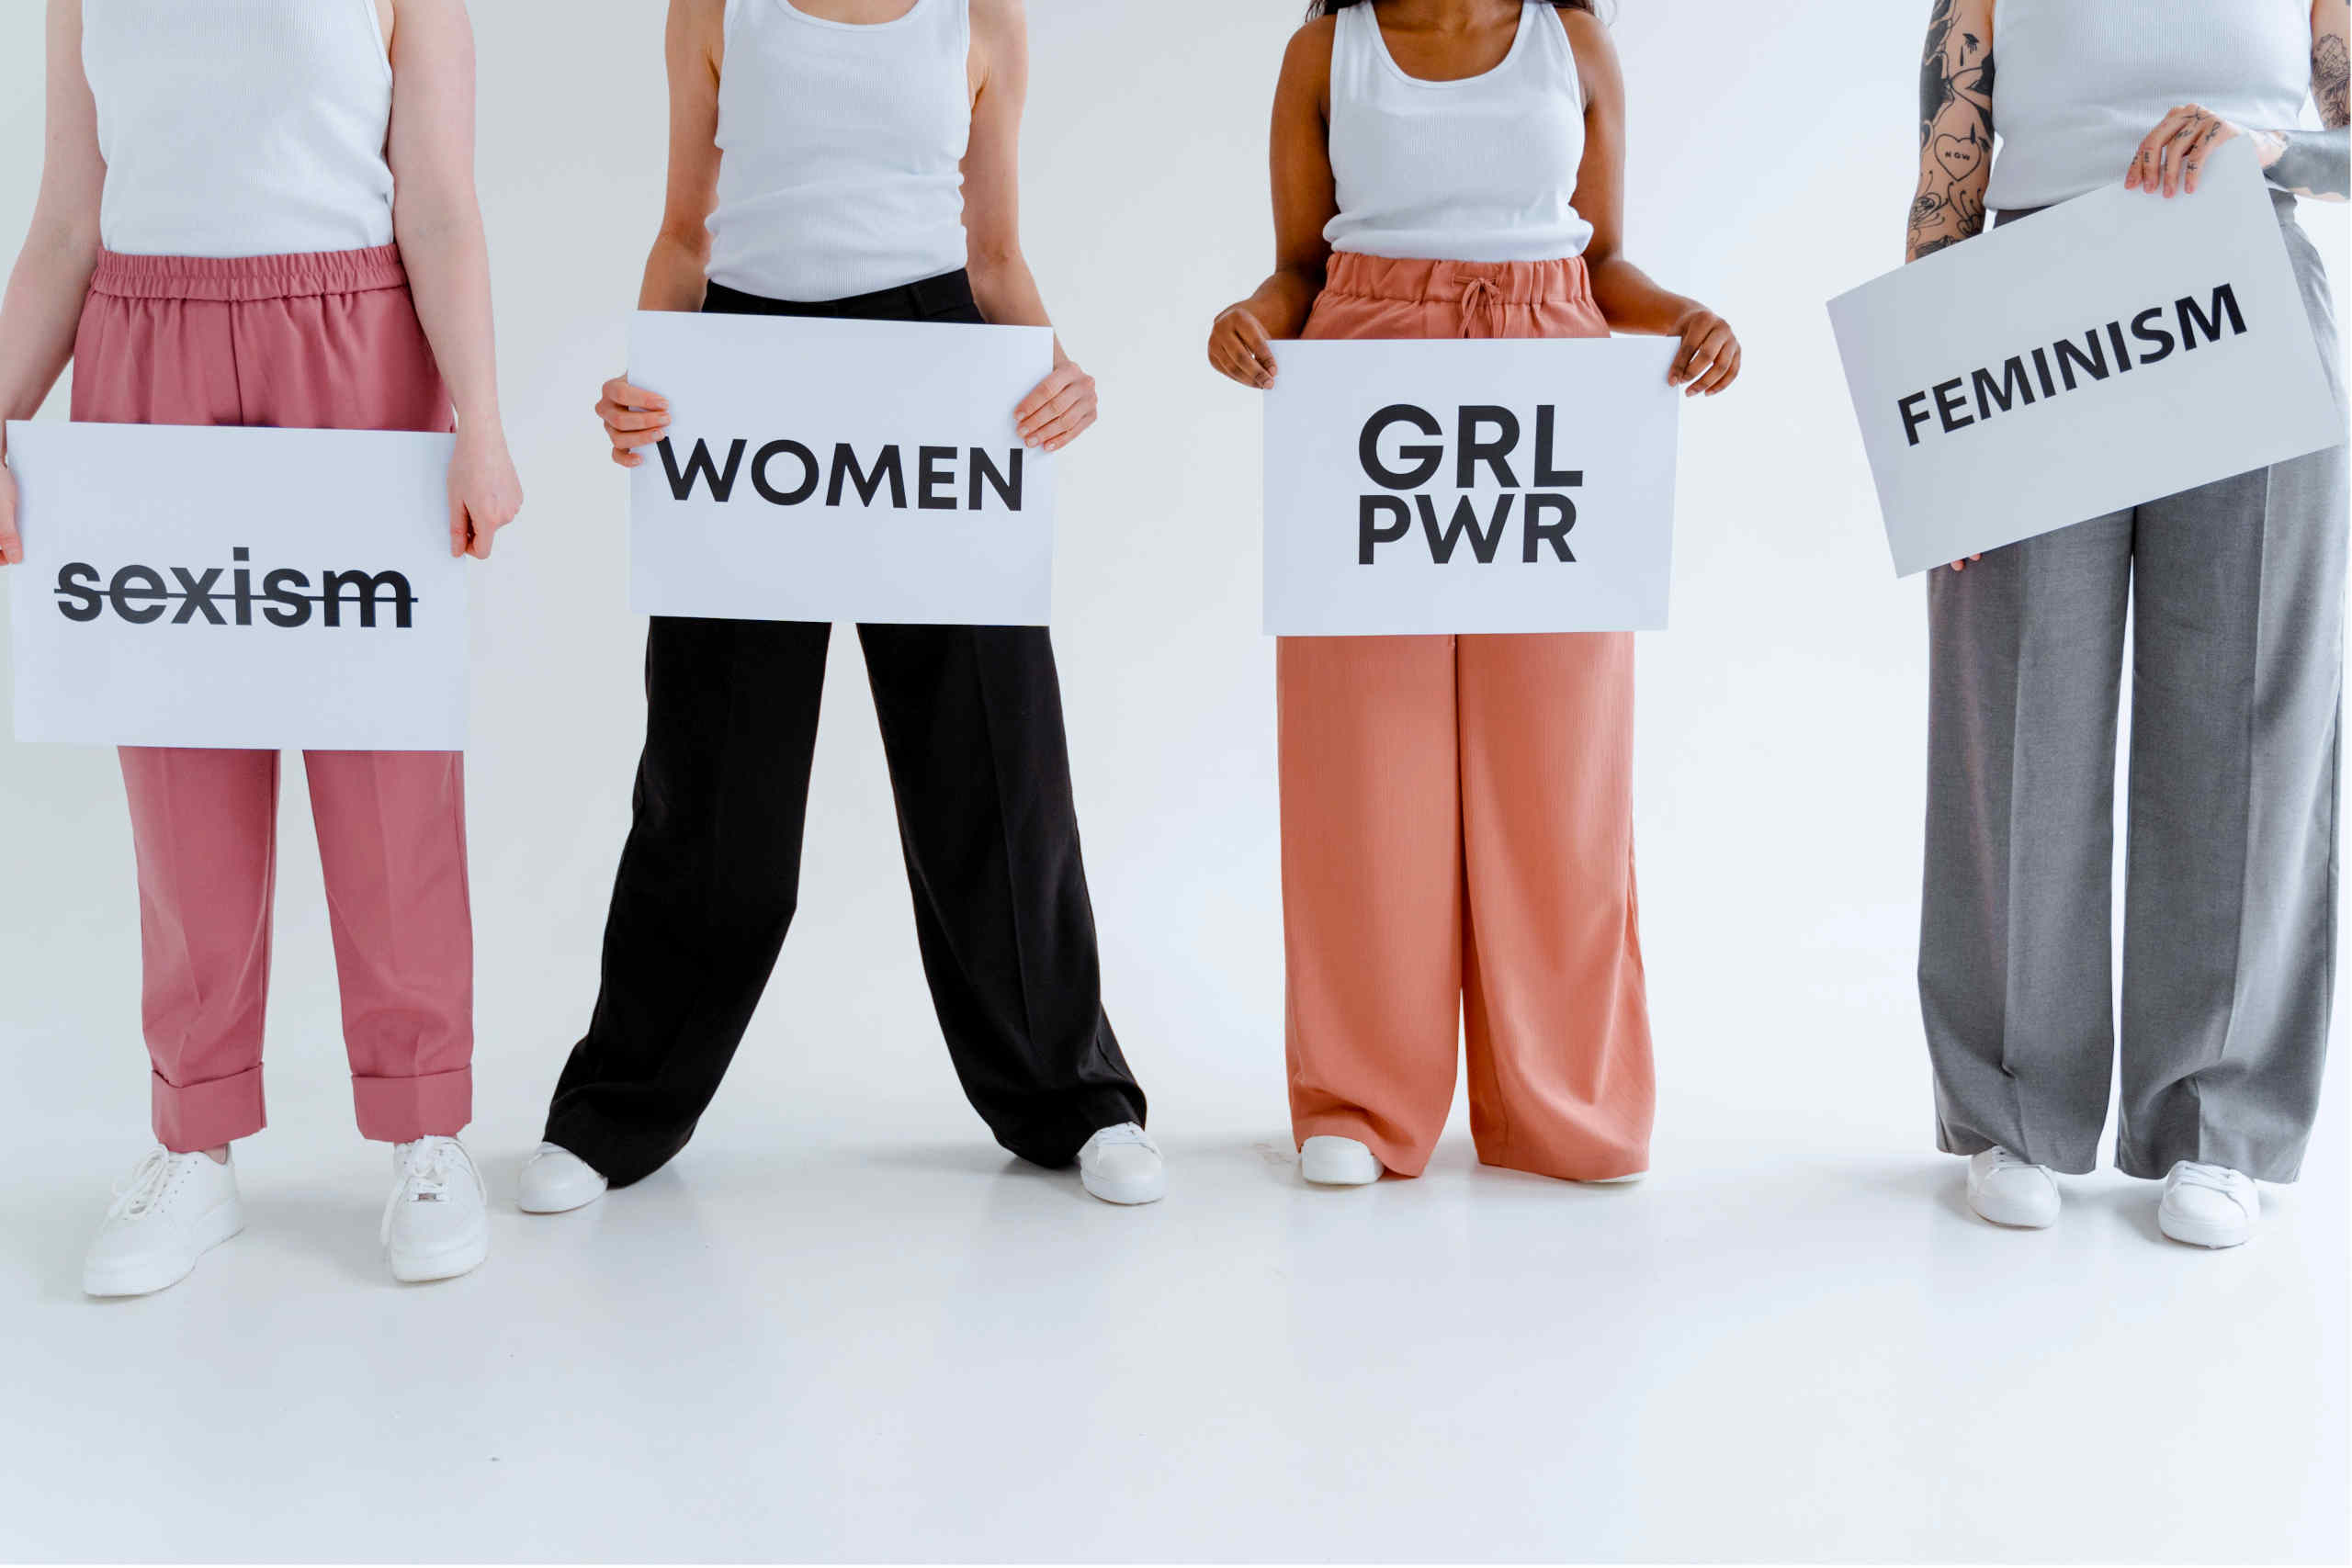 Quatro mulheres com cartazes com palavras relacionadas com o feminismo.